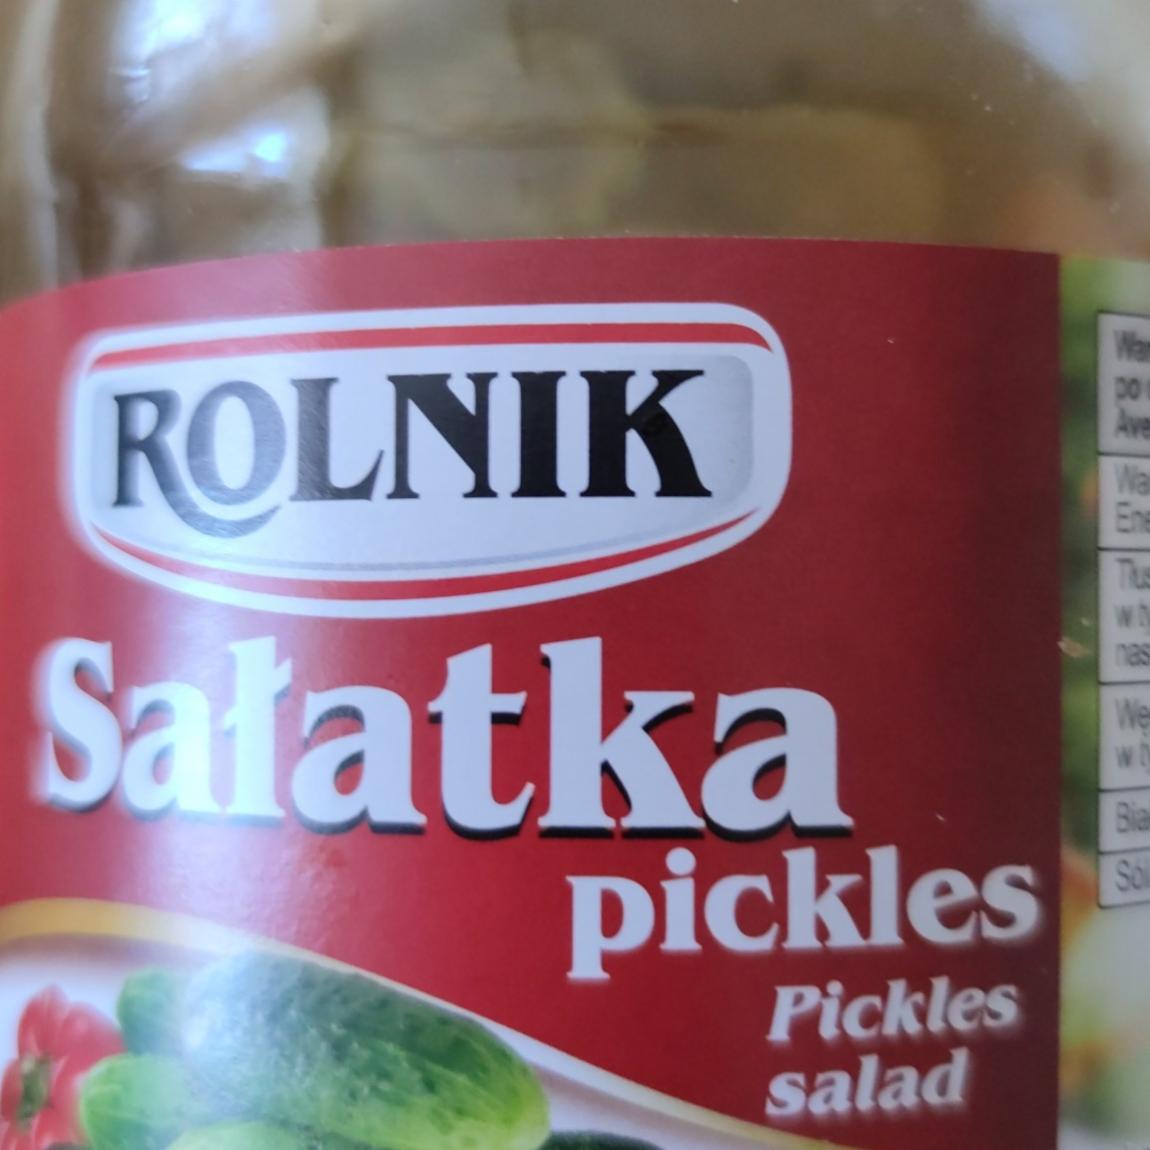 Fotografie - Salatka pickles Rolnik